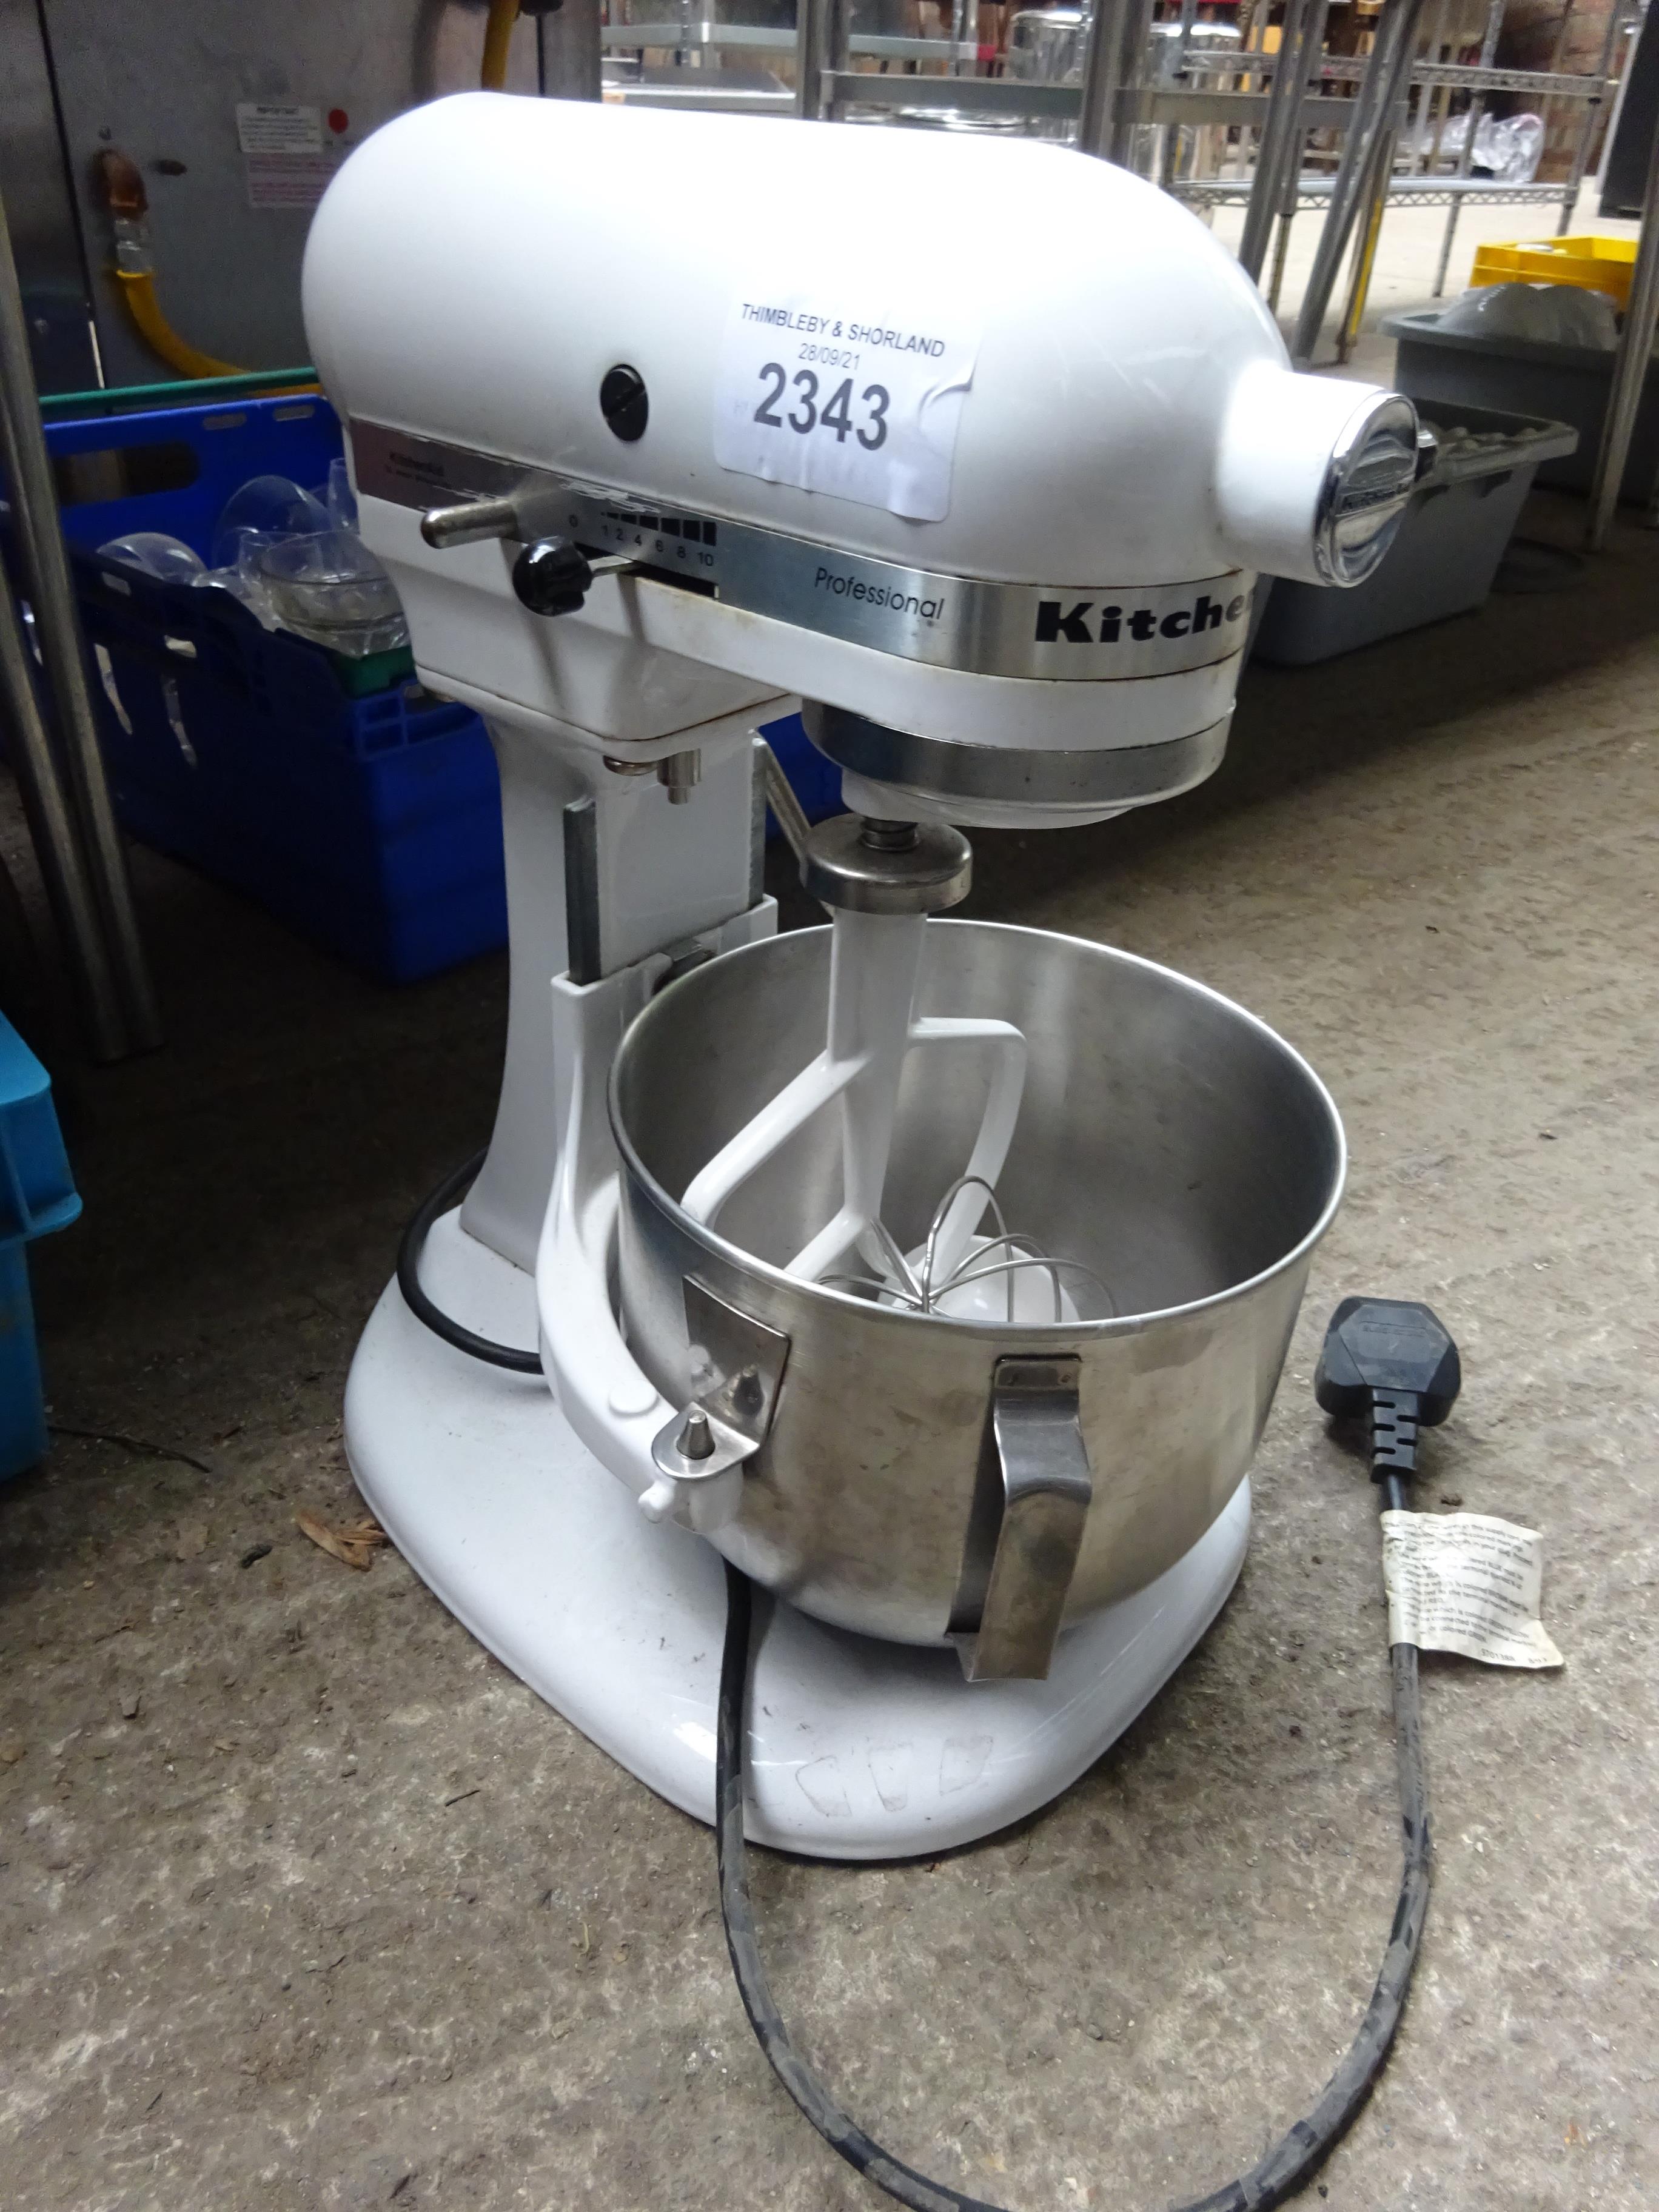 Kitchen aid professional mixer 240v